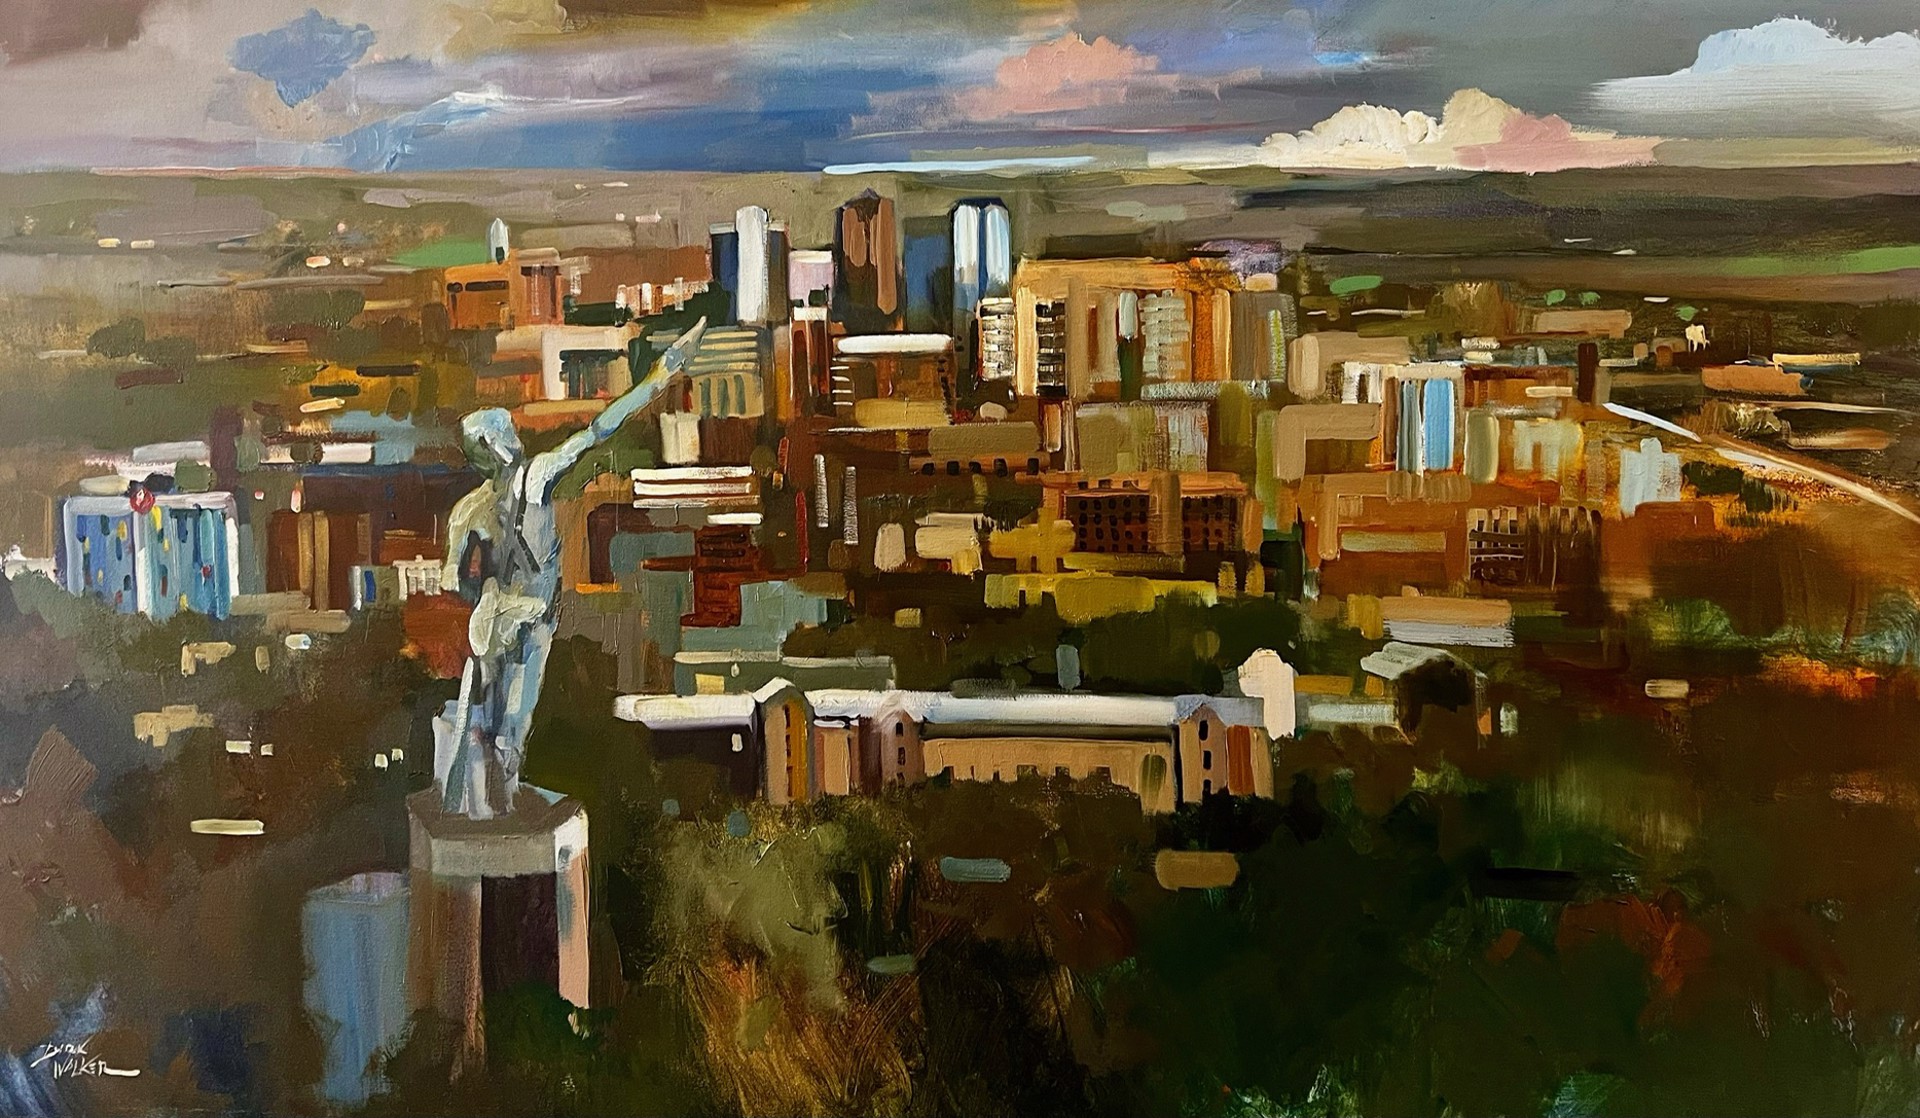 Birmingham Skyline Commission by Dirk Walker